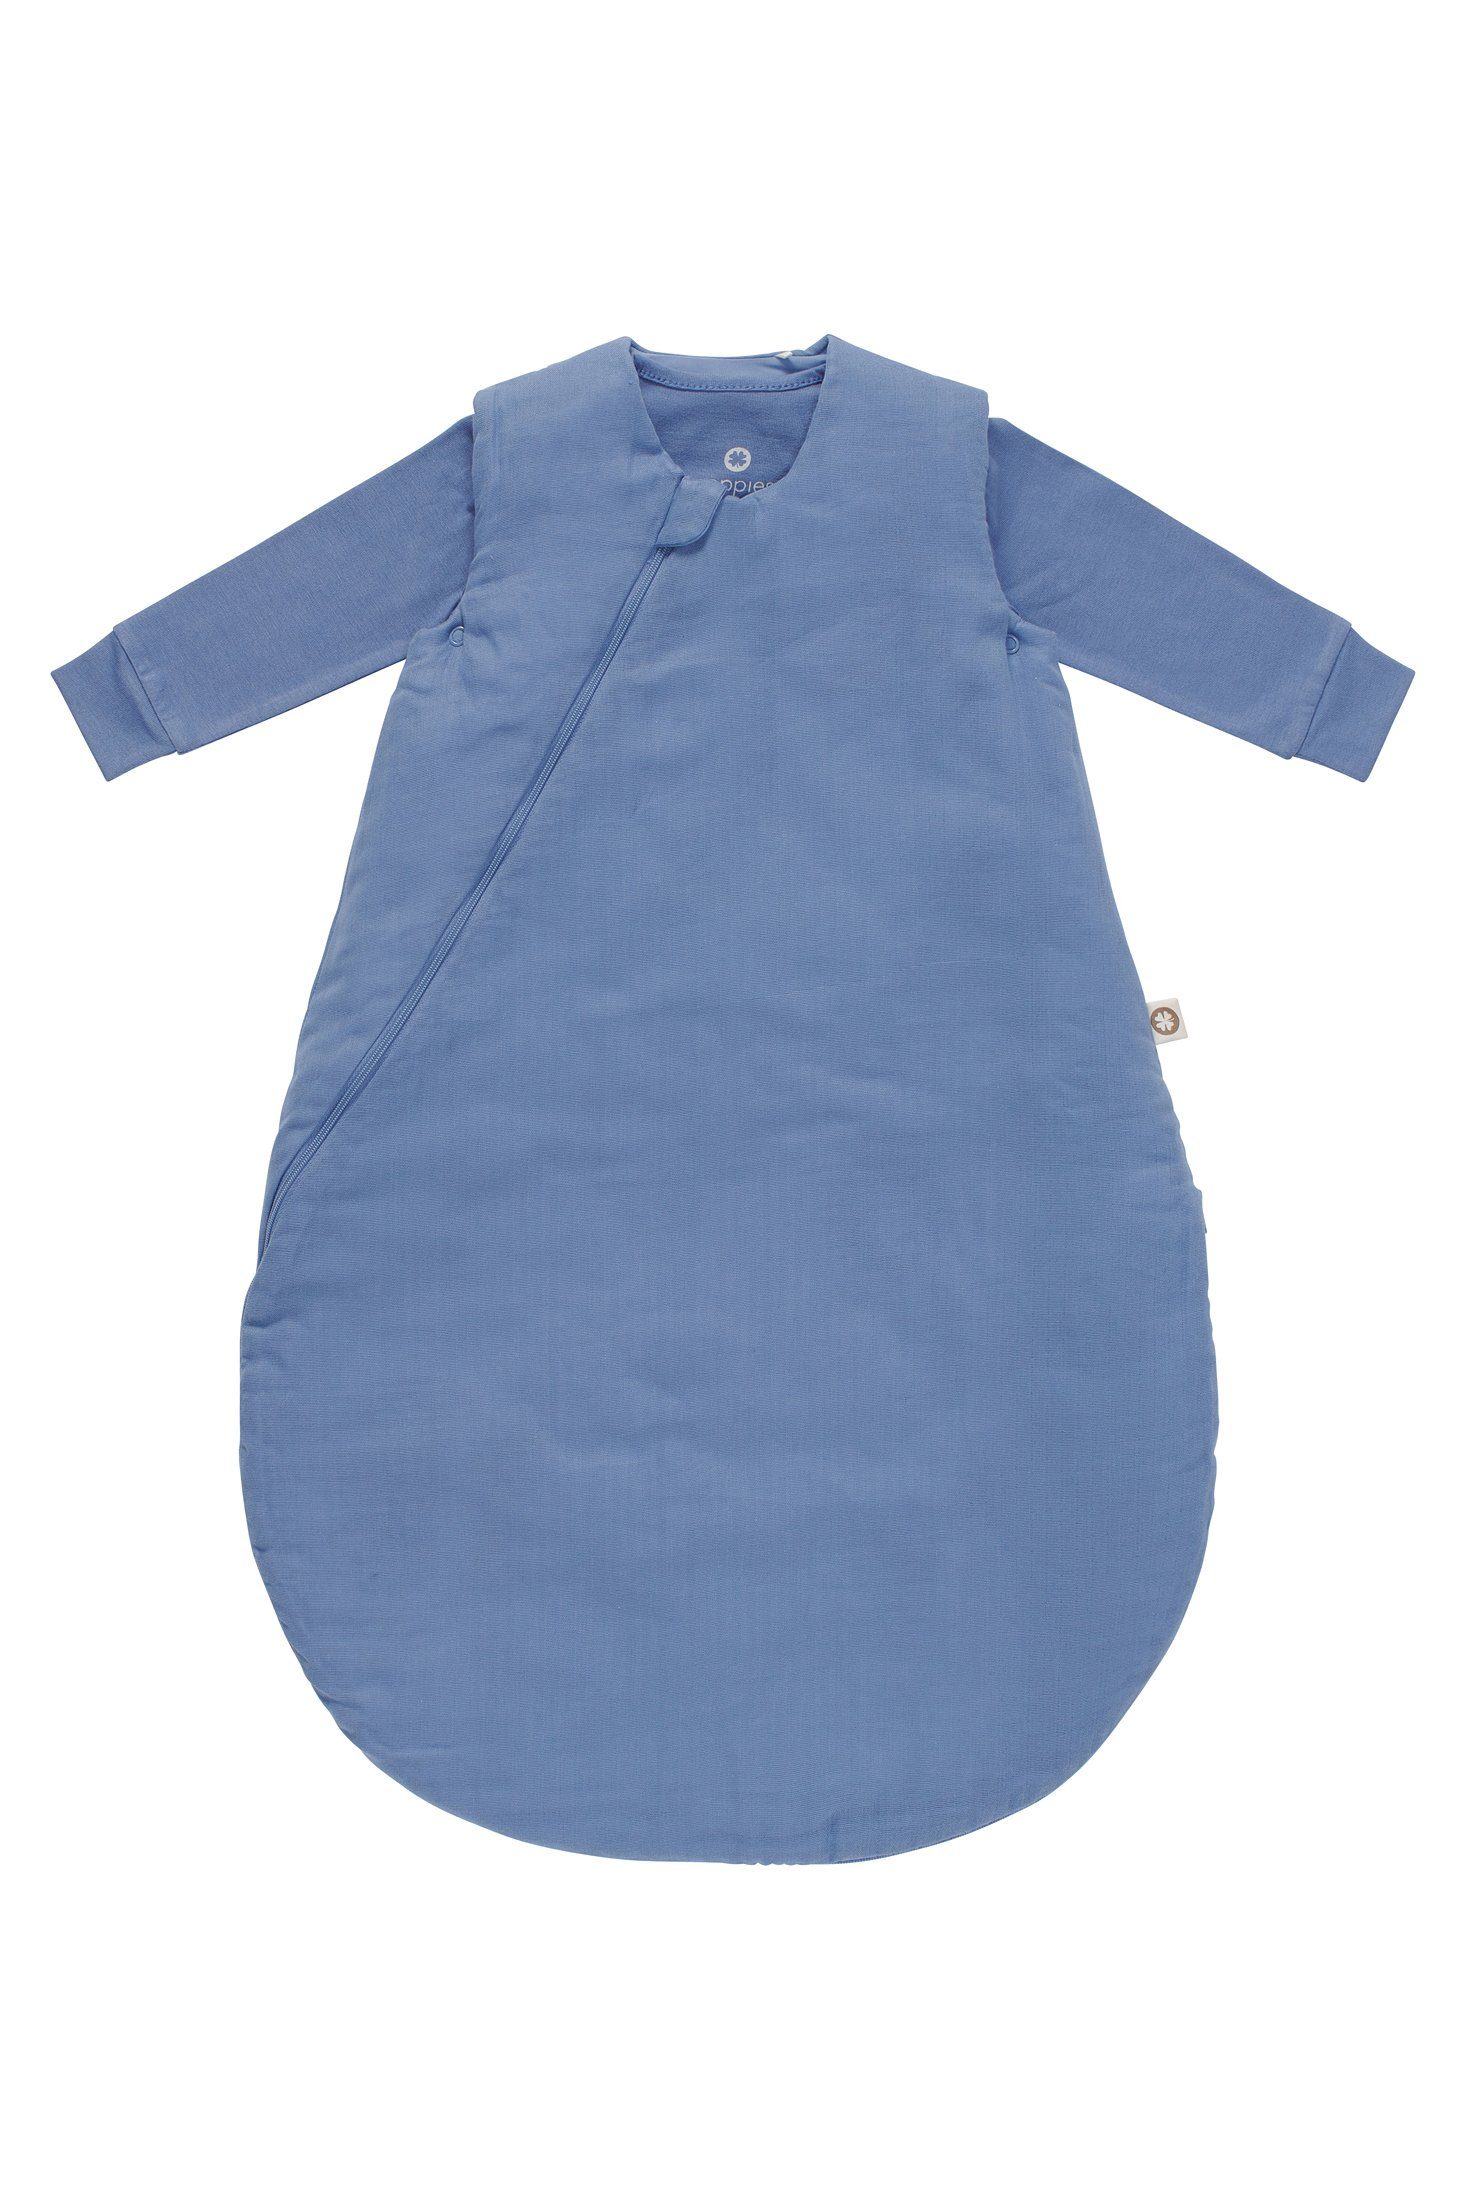 Baby (1 Colony tlg) 4-Jahreszeiten Uni Schlafsack Babyschlafsack Noppies Noppies Blue